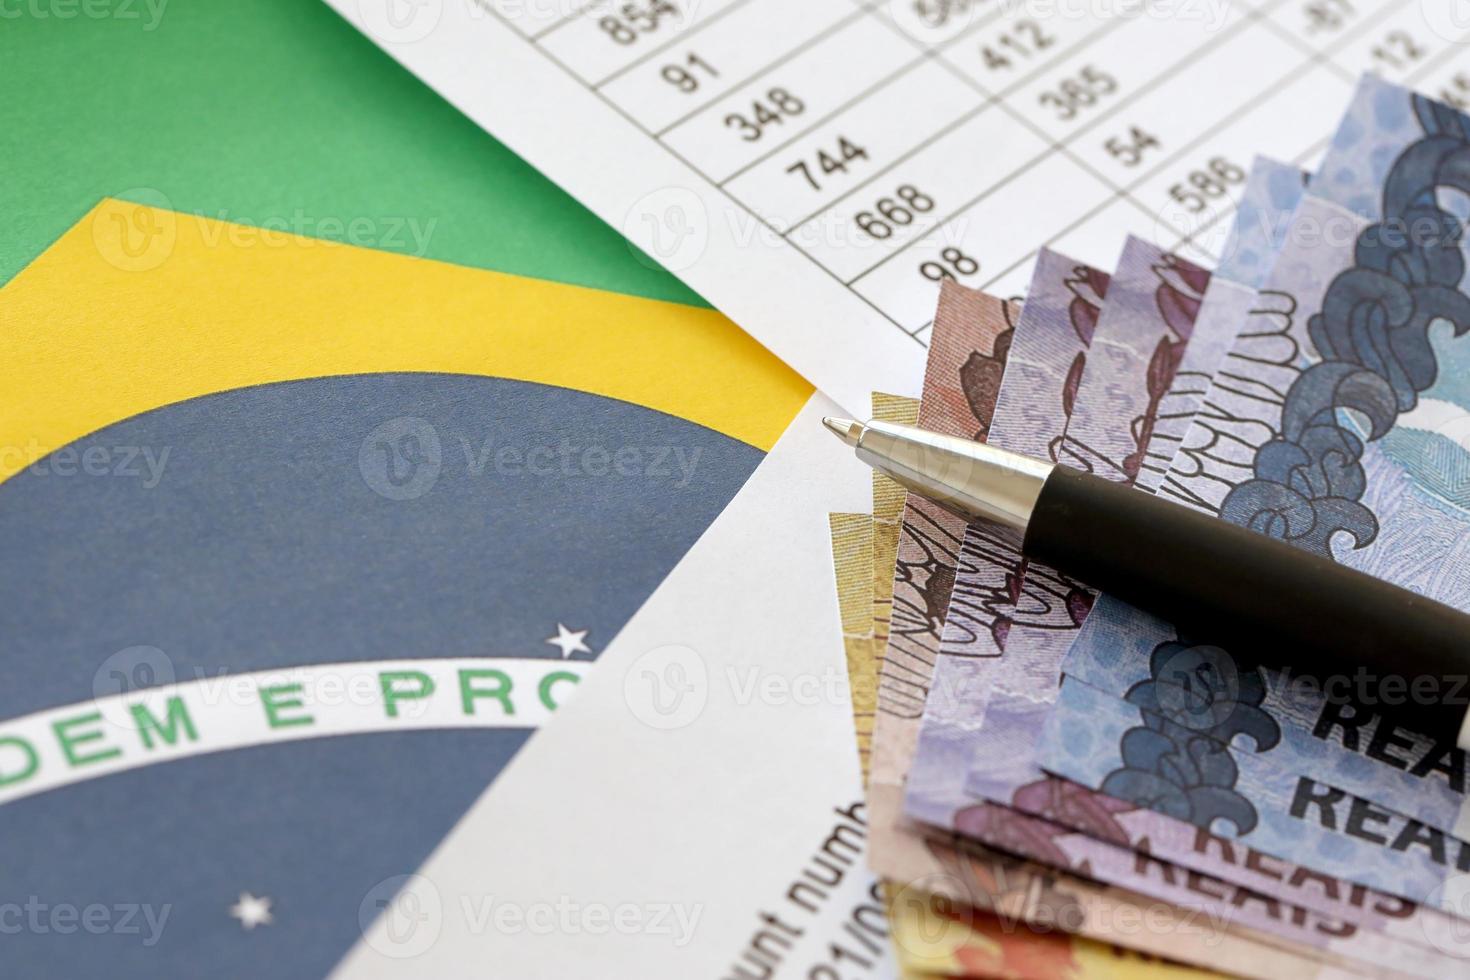 penna con brasiliano i soldi fatture su vuoto di lotteria gioco. concetto di fortuna e gioco d'azzardo nel brasile foto